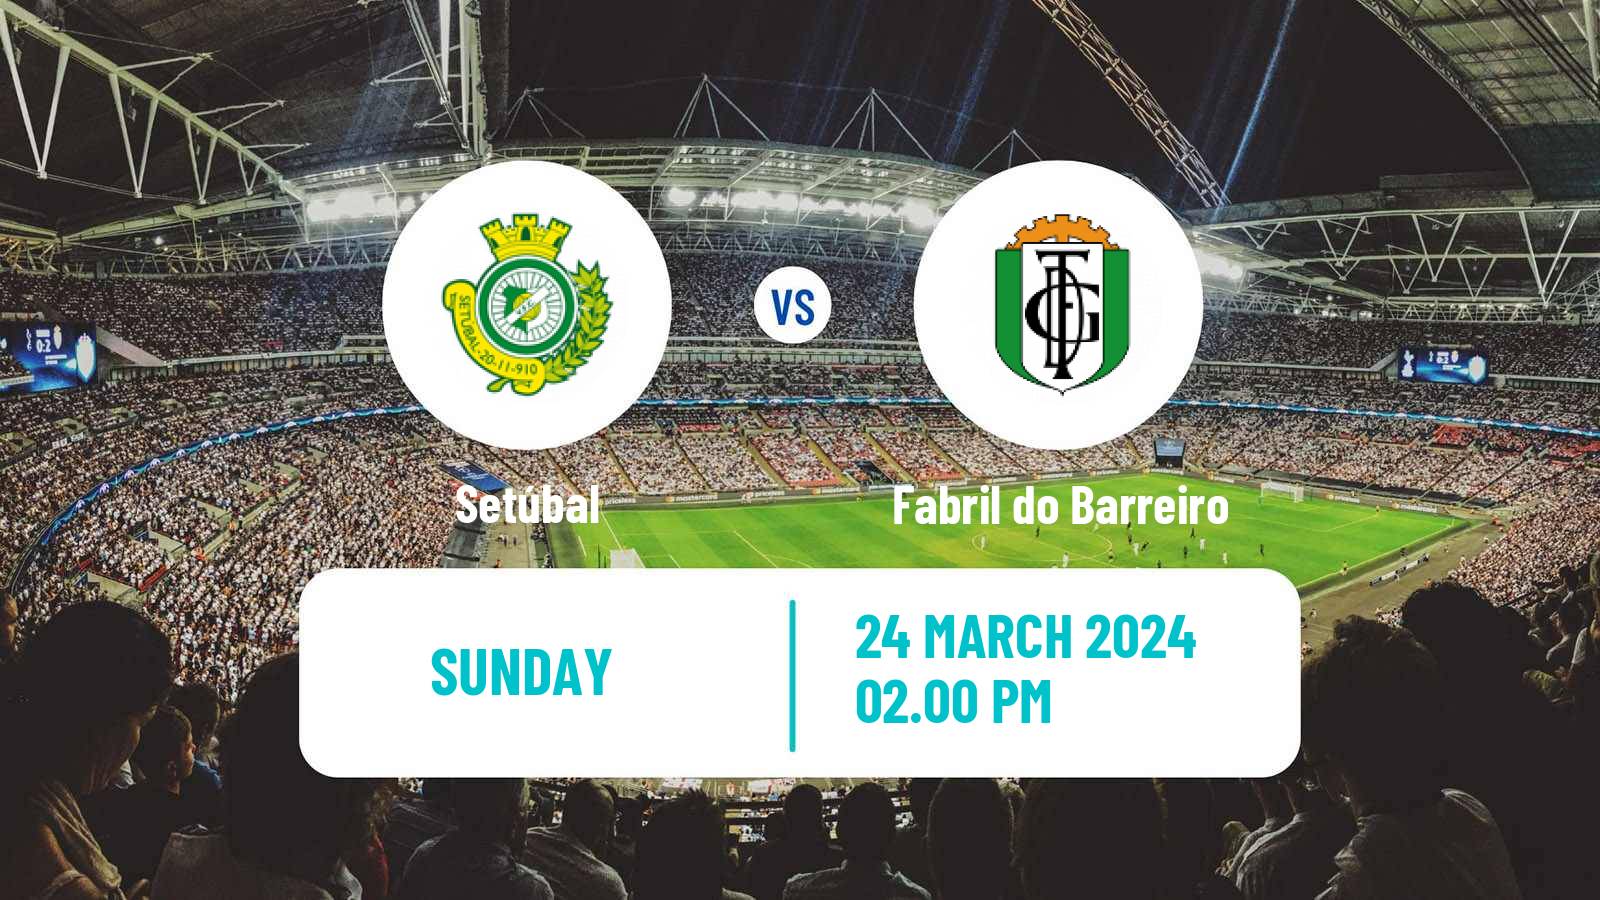 Soccer Campeonato de Portugal - Group D Setúbal - Fabril do Barreiro